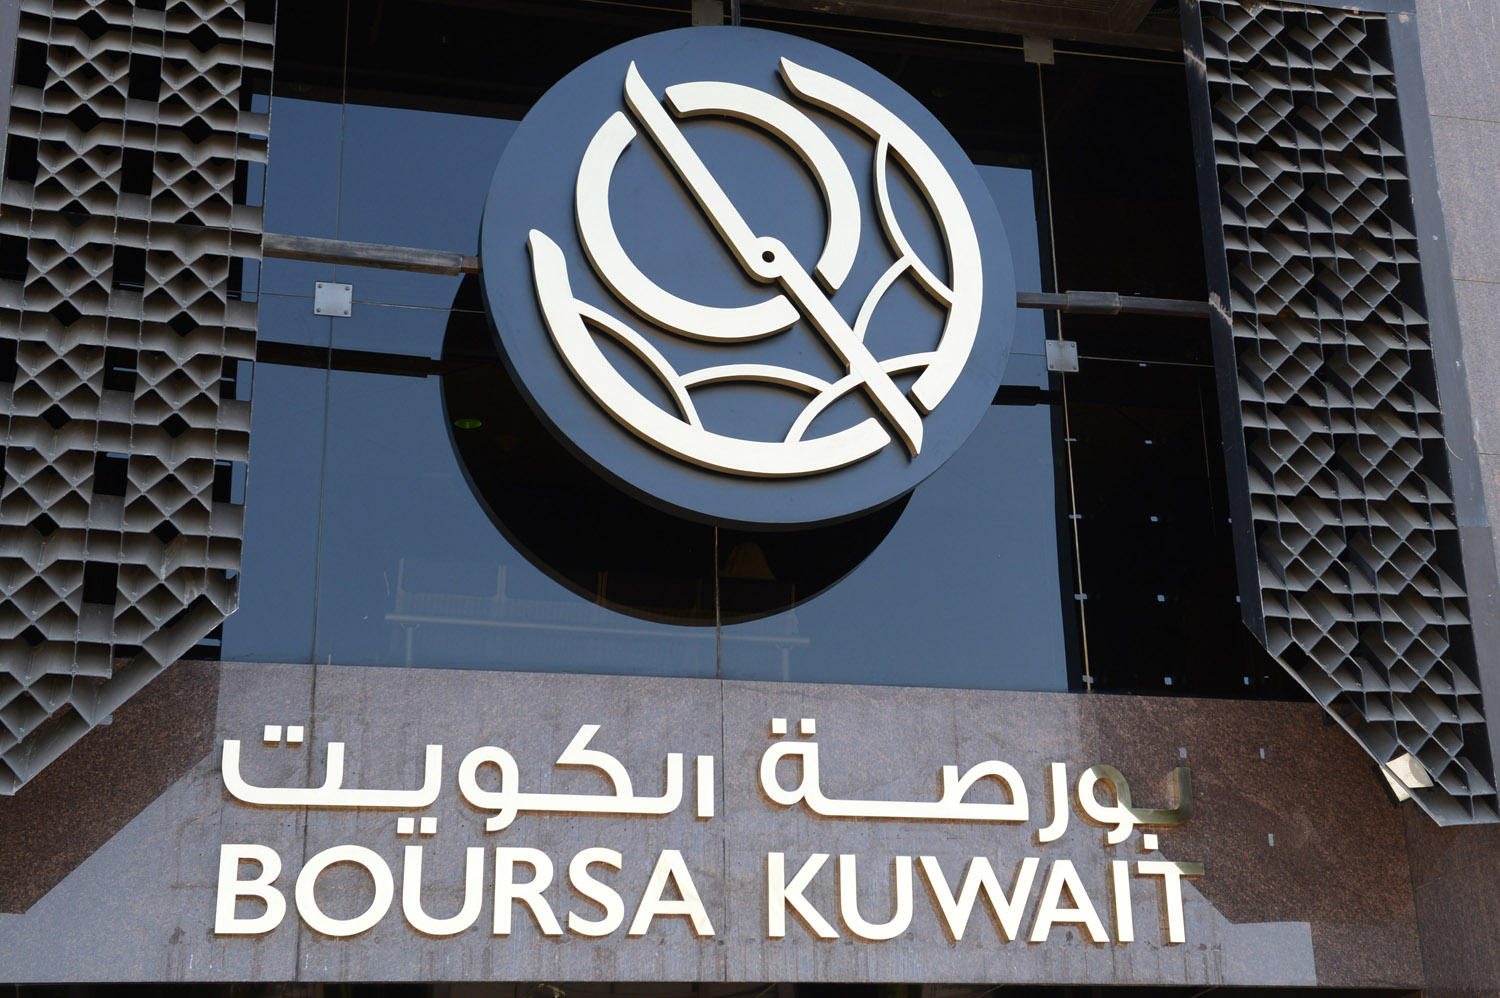 Boursa Kuwait ends Sun. green                                                                                                                                                                                                                             